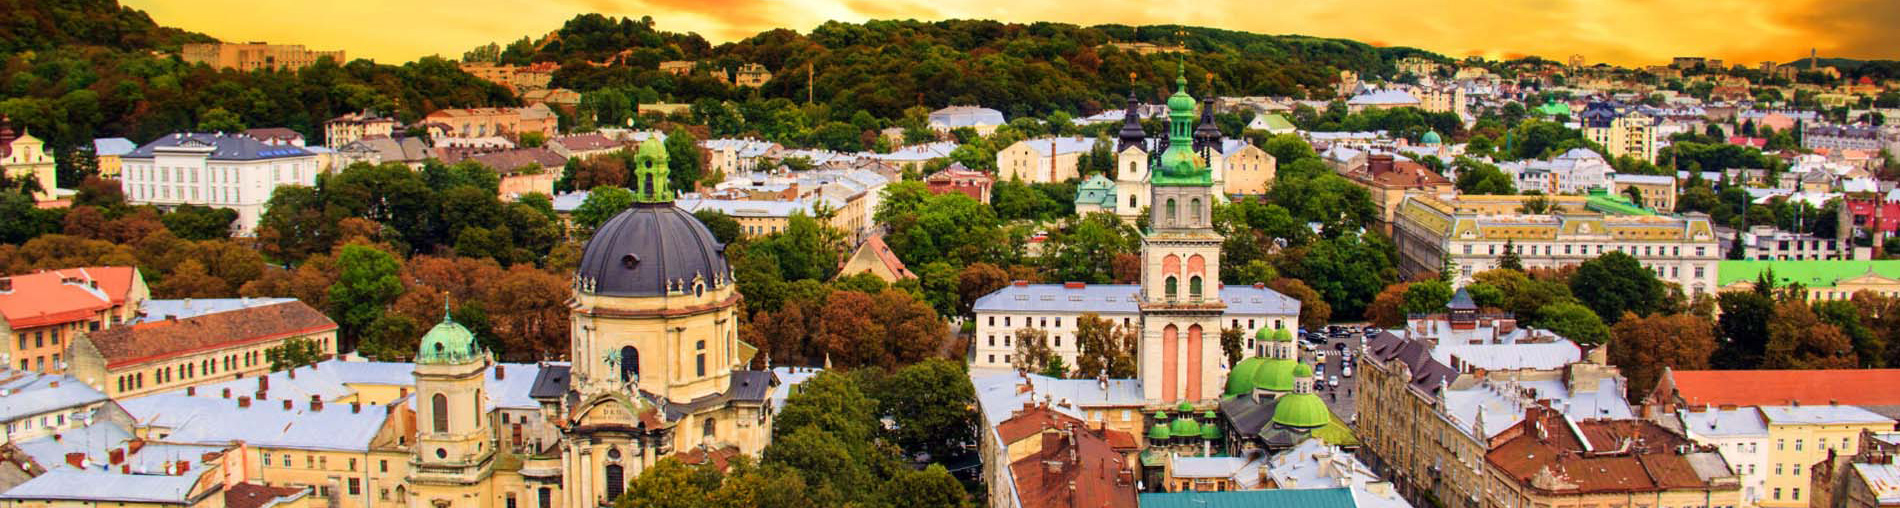 Places To Visit In Ukraine